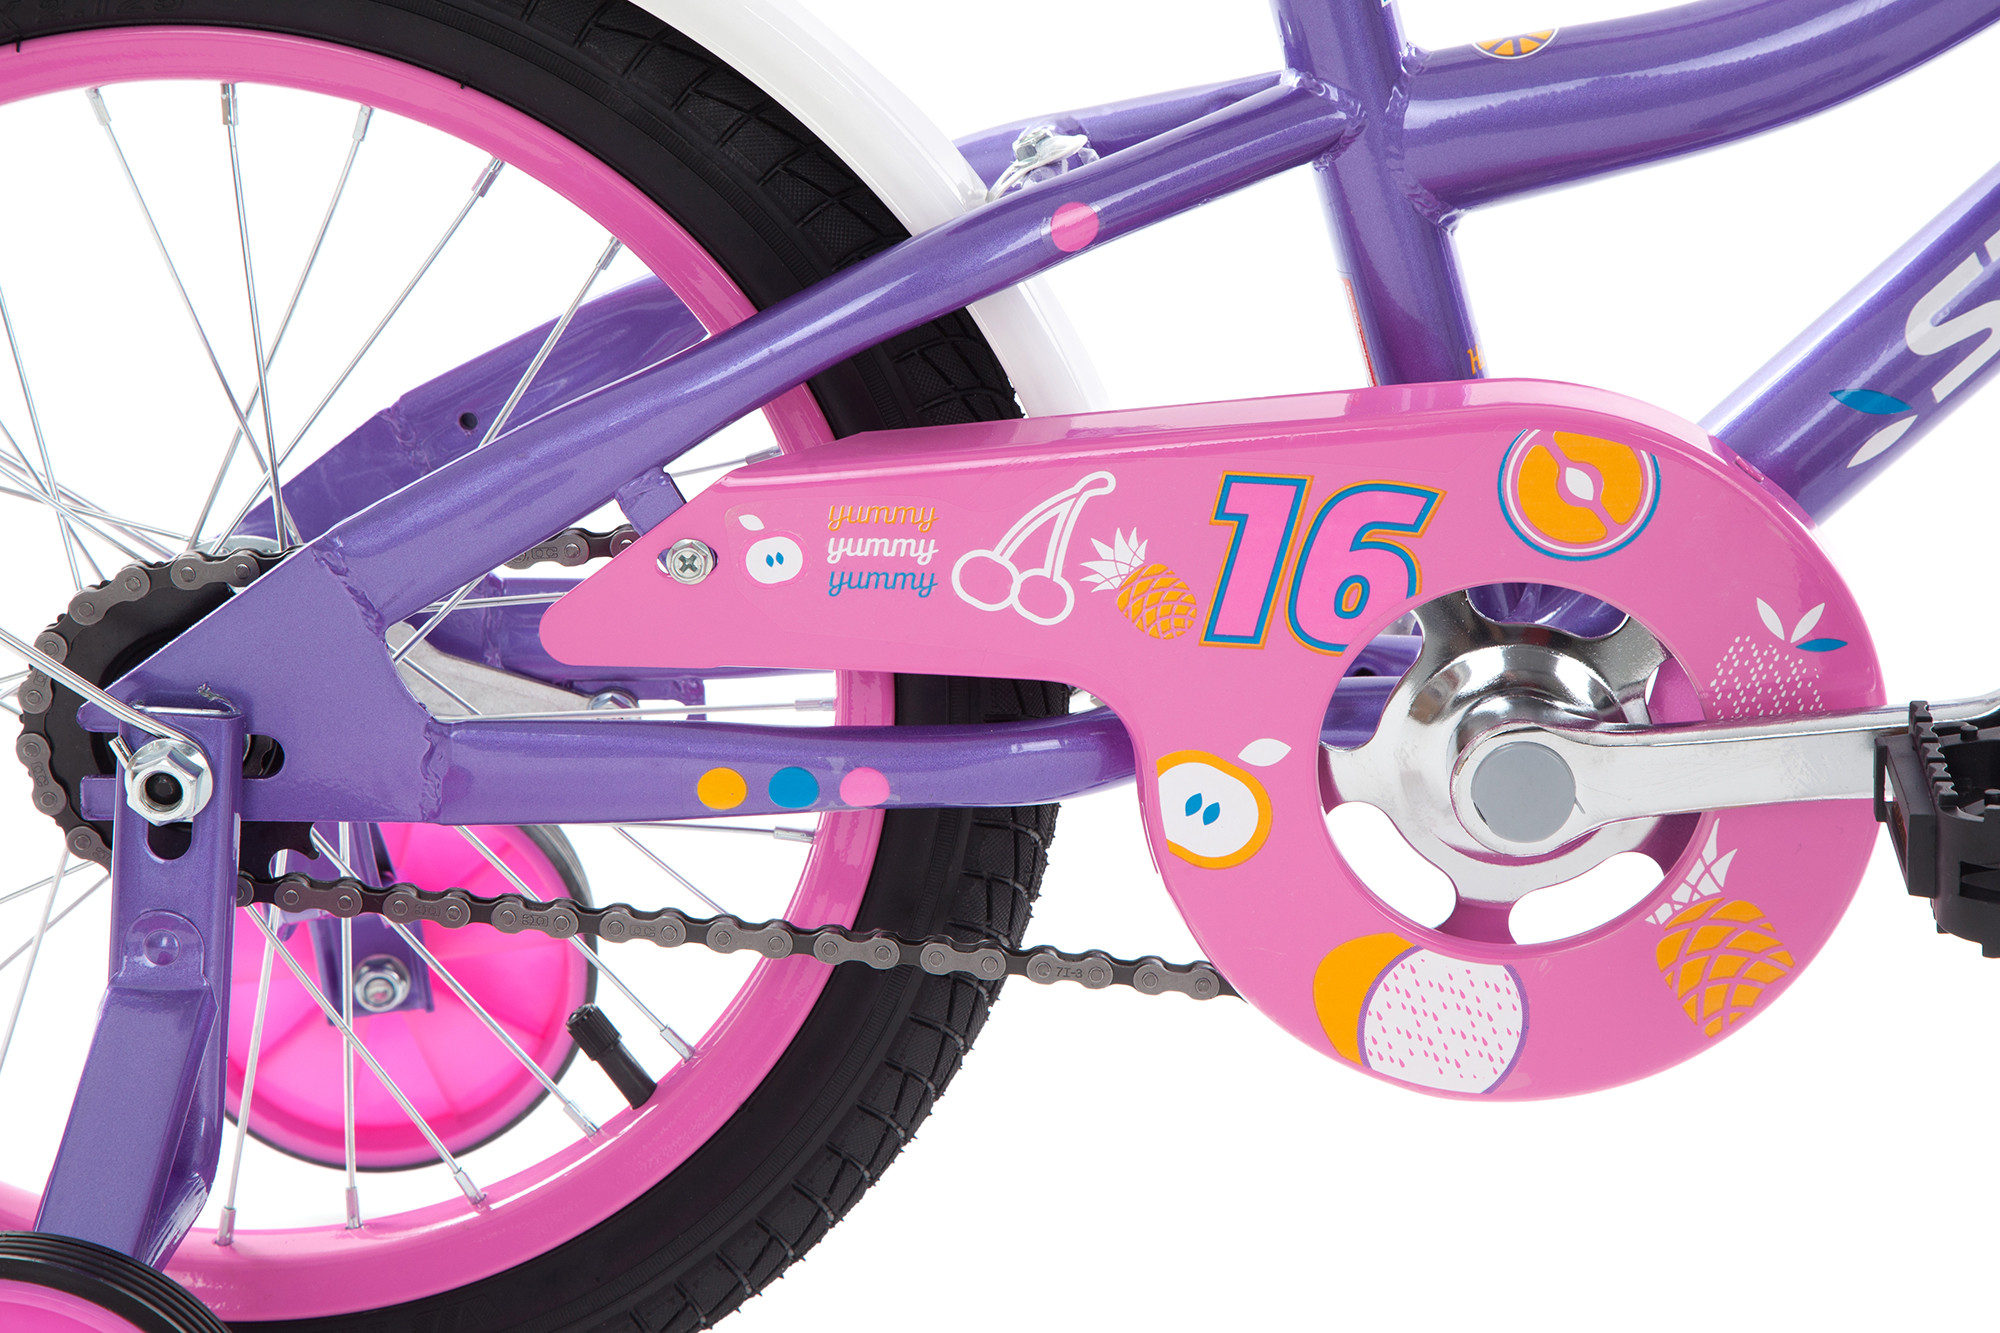 "Велосипед для дівчаток Stern Fantasy 16 16"""